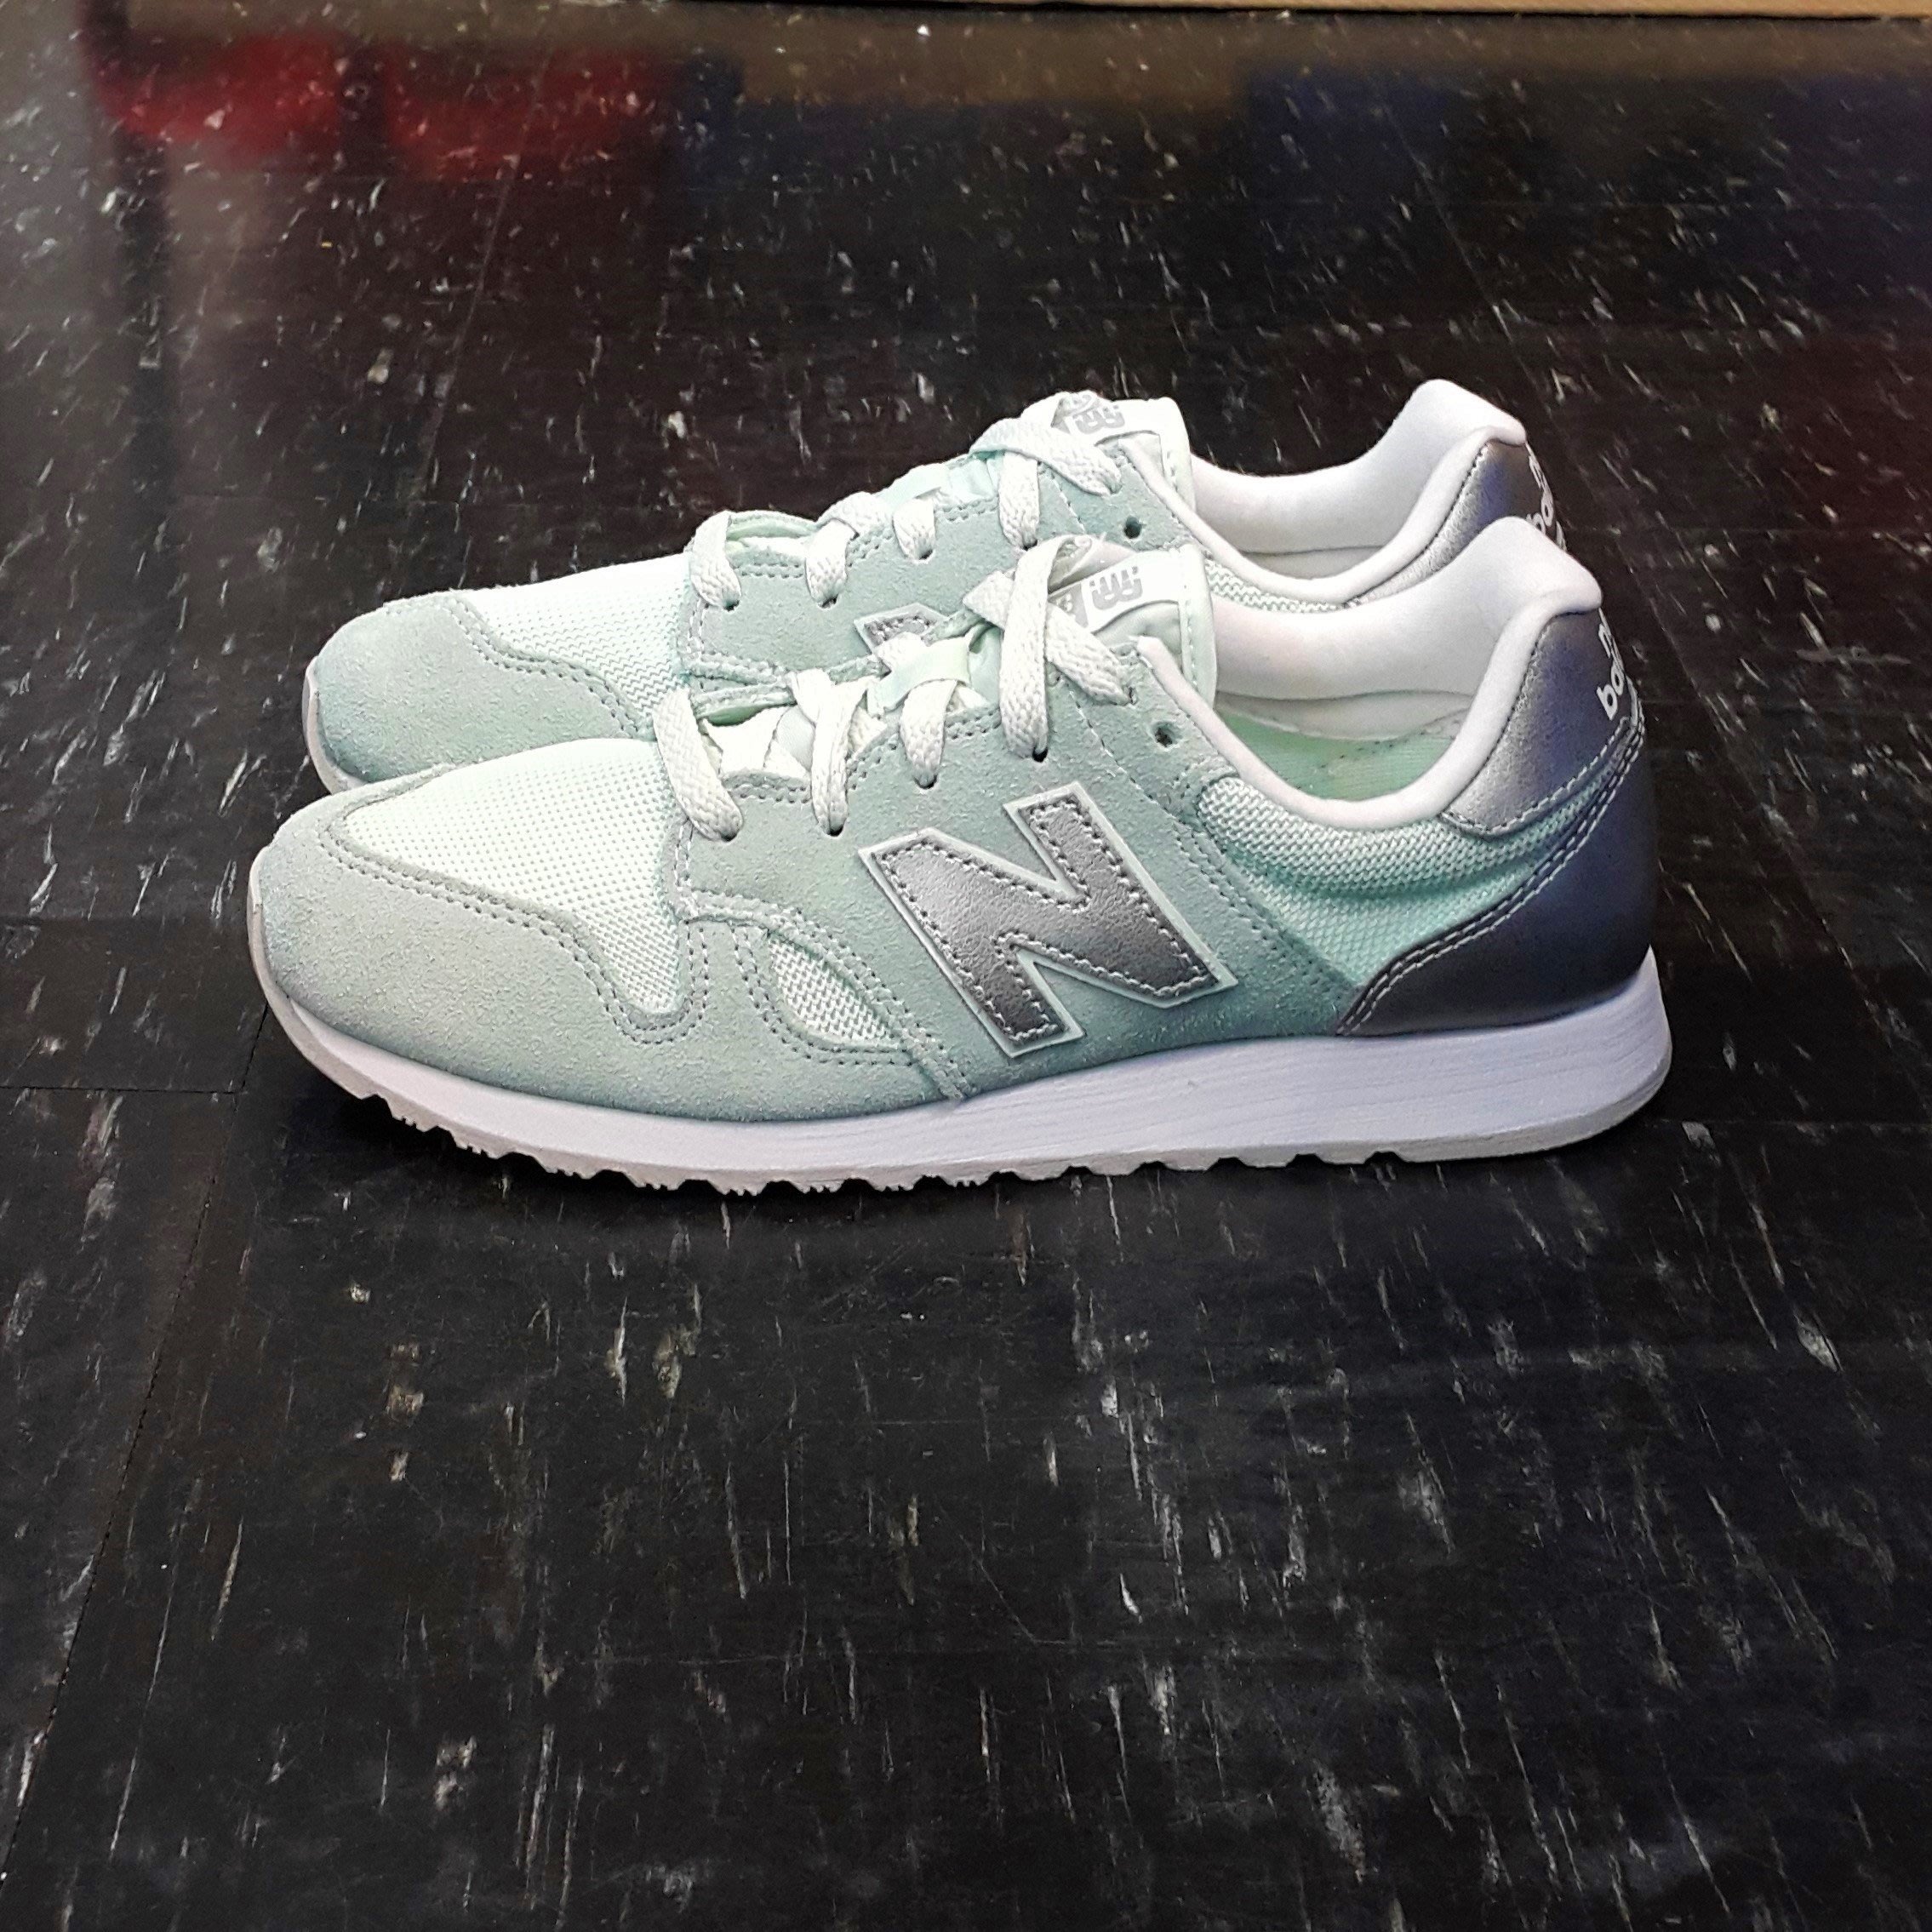 nb520 shoes